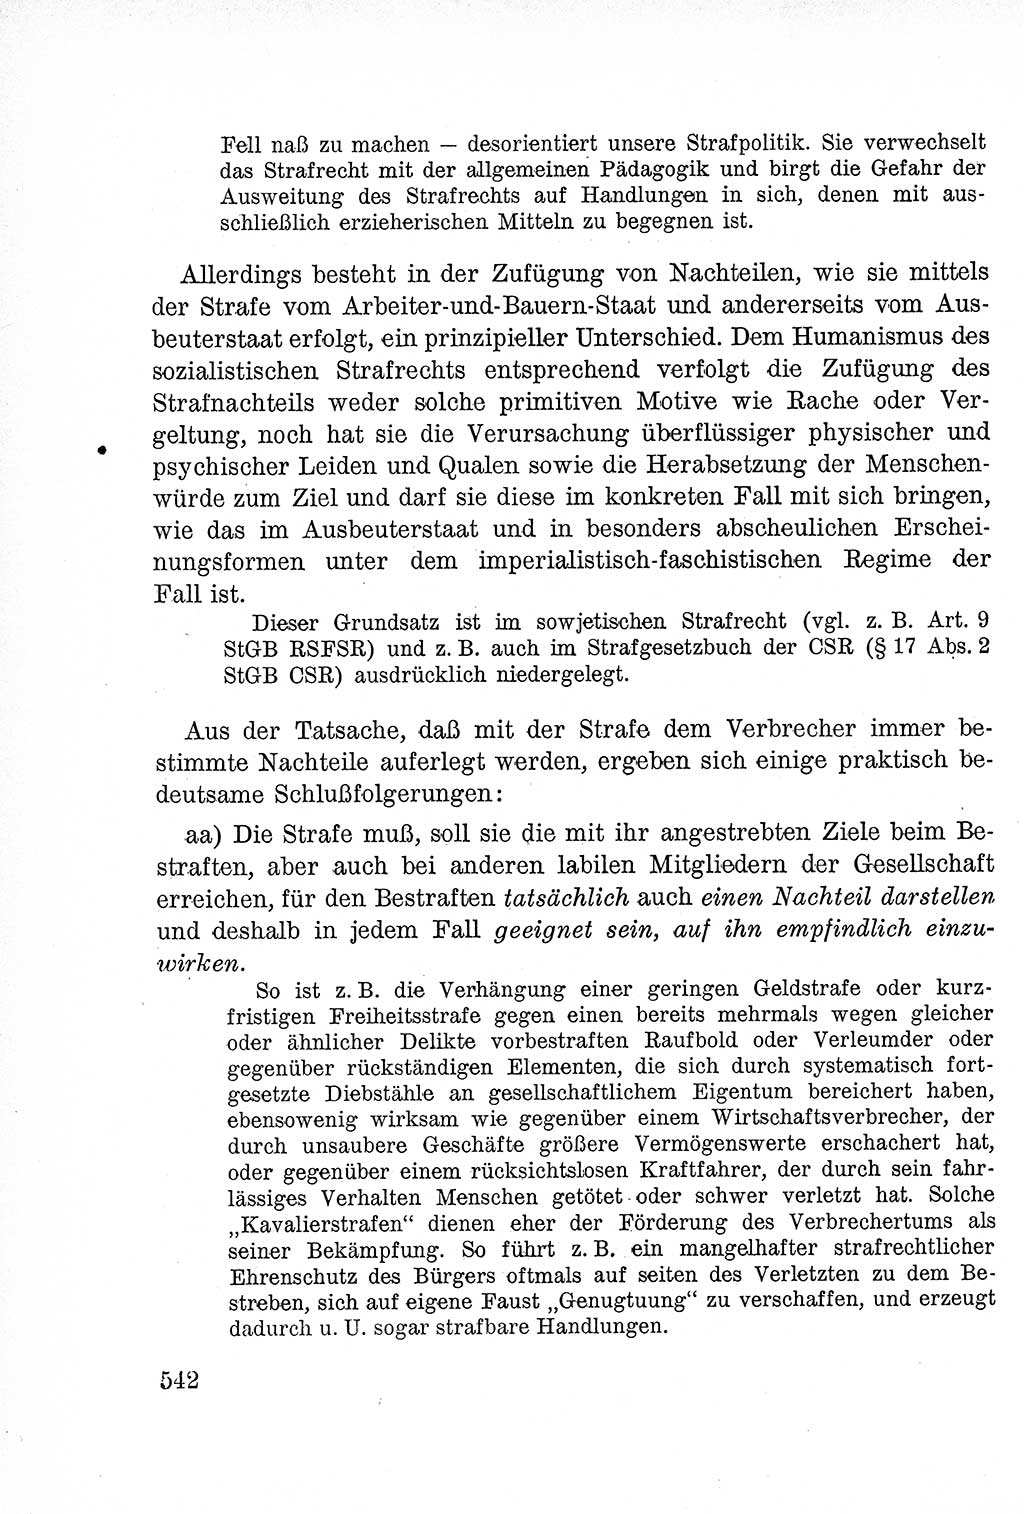 Lehrbuch des Strafrechts der Deutschen Demokratischen Republik (DDR), Allgemeiner Teil 1957, Seite 542 (Lb. Strafr. DDR AT 1957, S. 542)